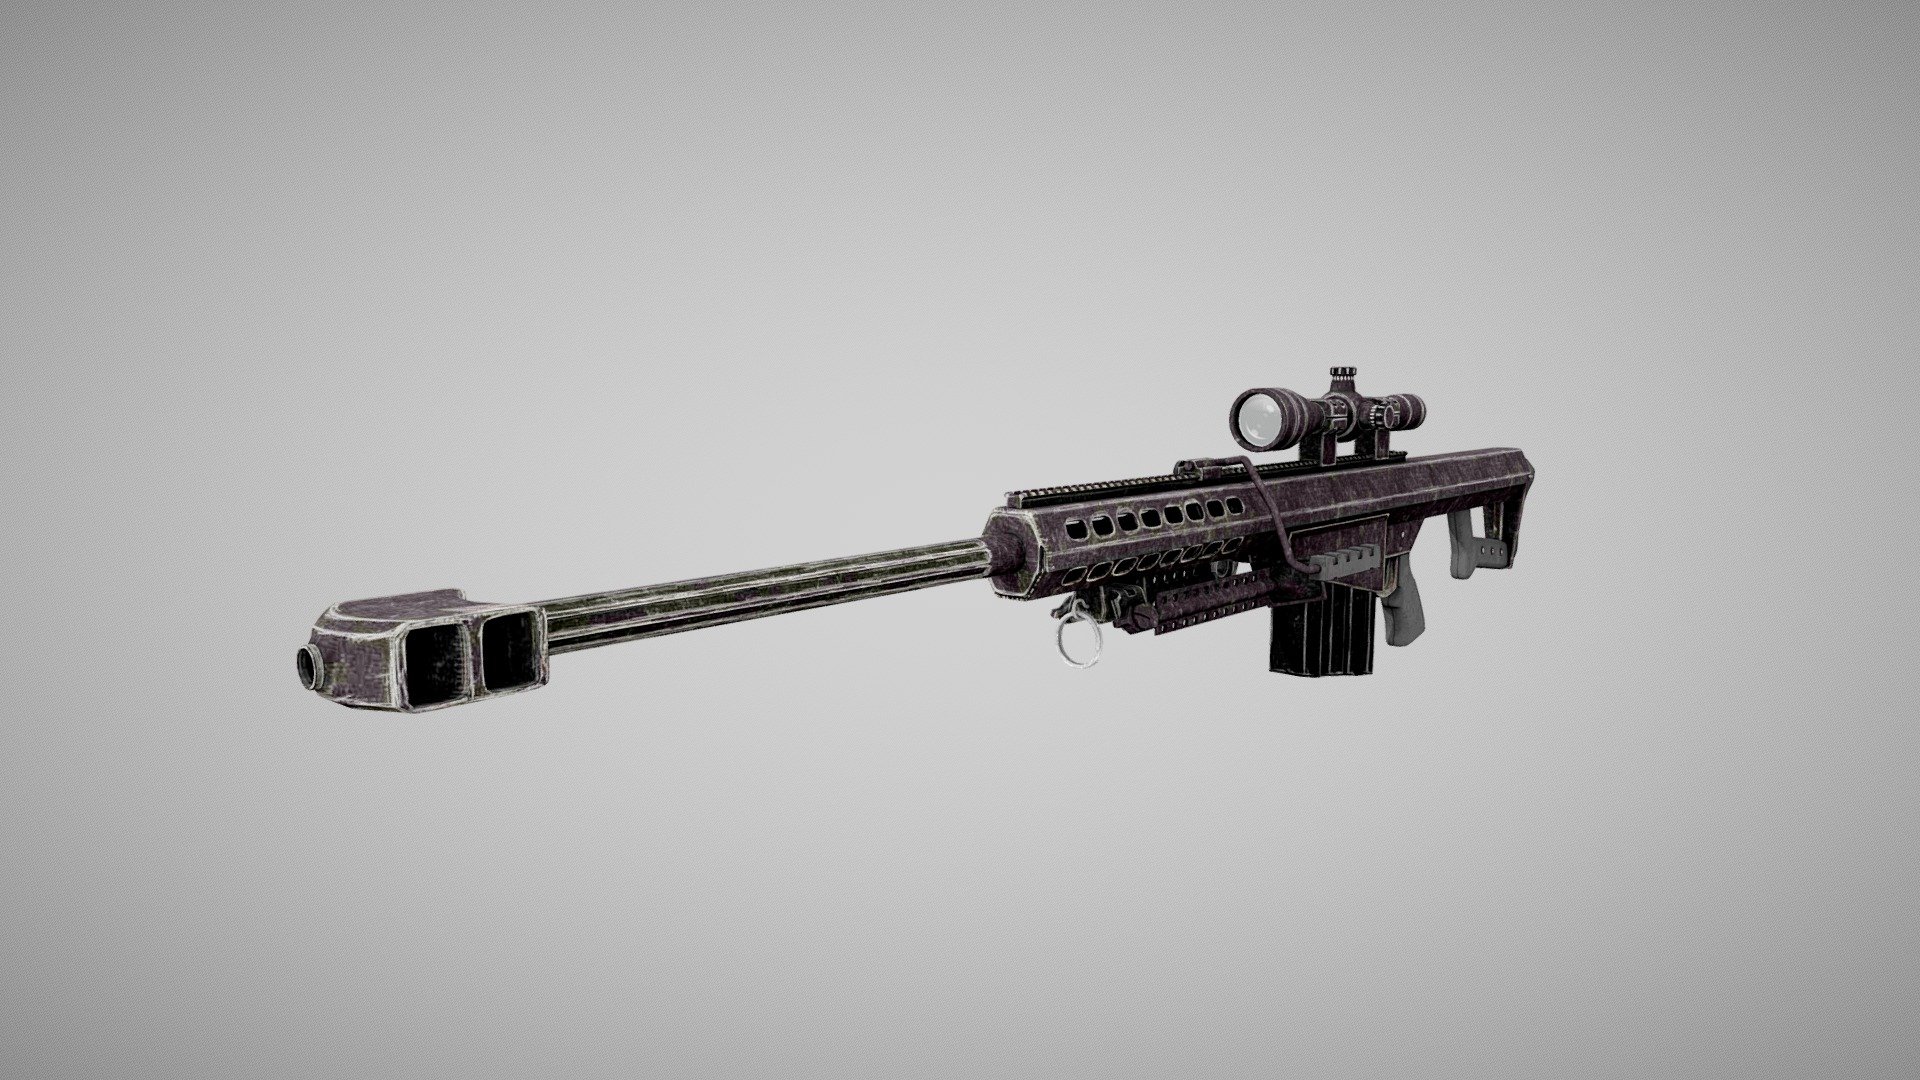 Barrett M82A1 Sniper Rifle